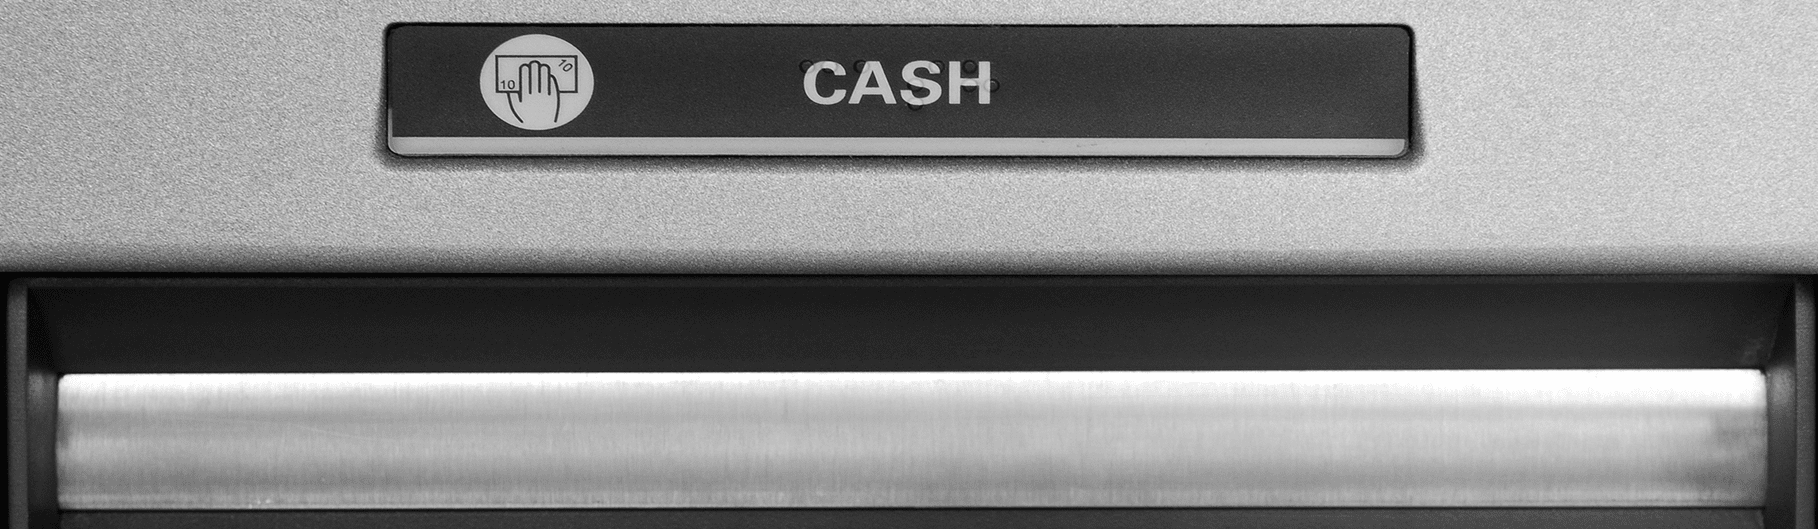 cash shutter